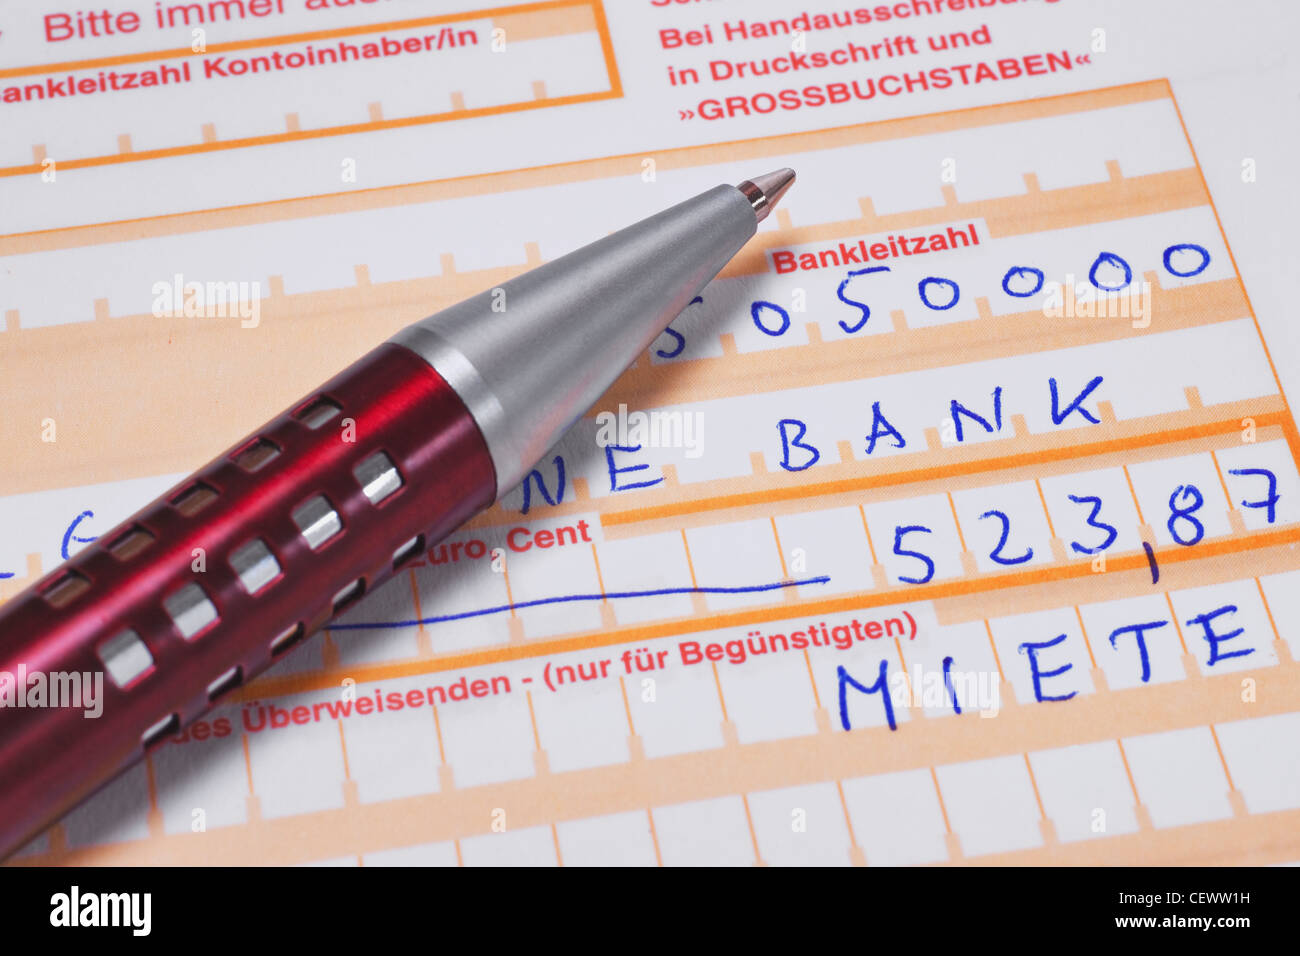 Detailansicht eines Überweisungsformulars für die Überweisung der Miete | Detail photo of a bank transfer form to remit the rent Stock Photo